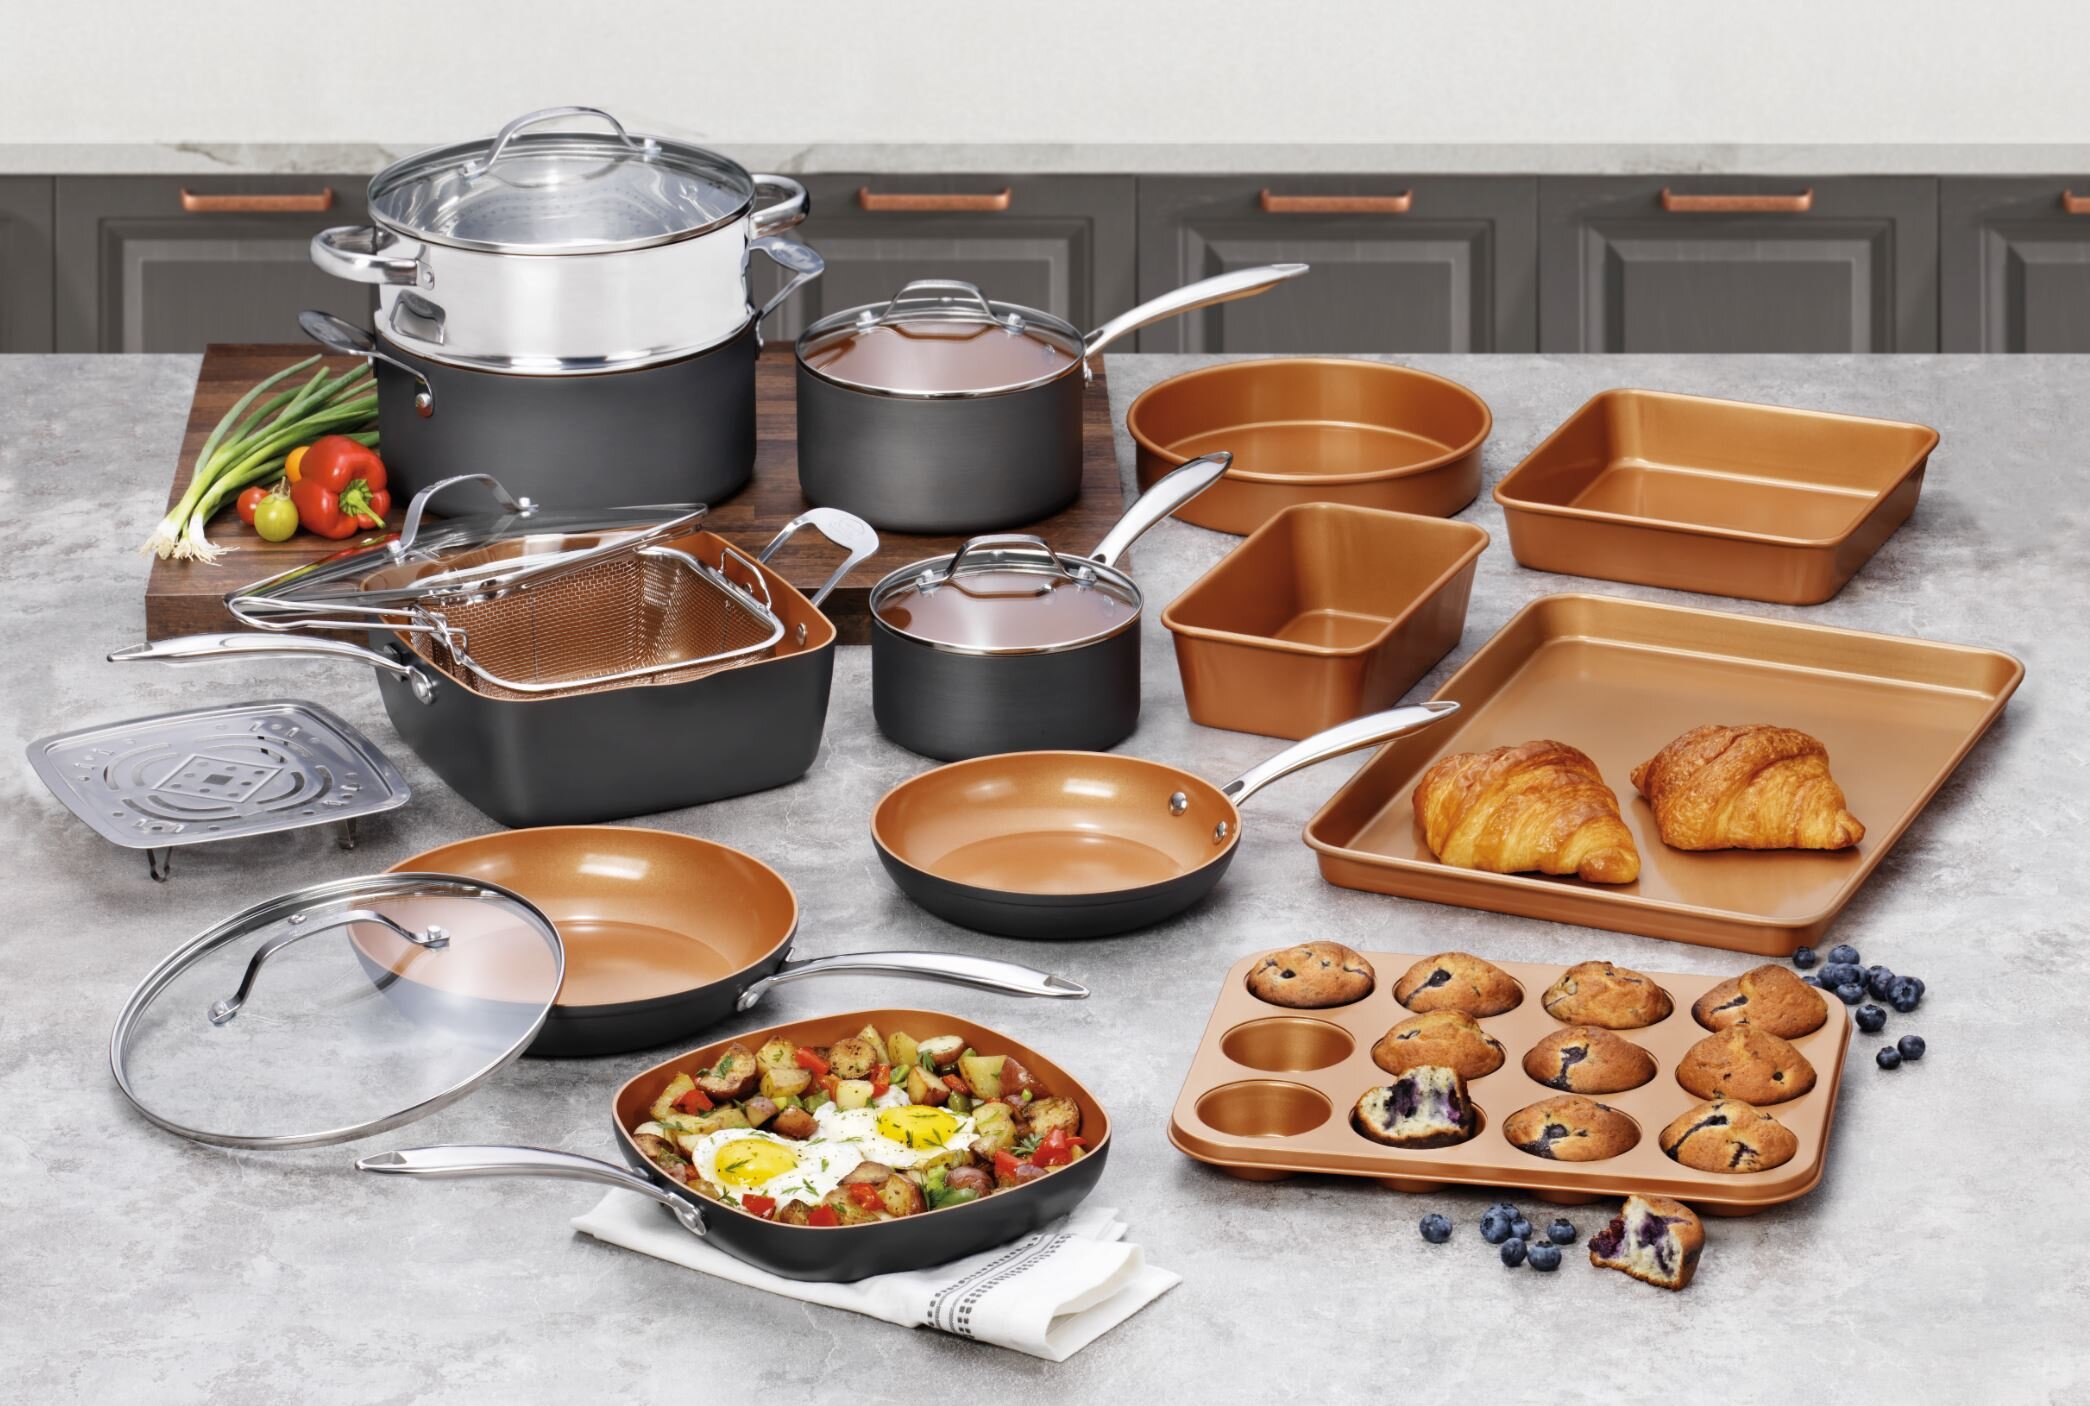 https://assets.wfcdn.com/im/16681938/compr-r85/1877/187777412/gotham-steel-pro-20-piece-pots-pans-set-hard-anodized-complete-cookware-set-bakeware-set-ultra-nonstick-ceramic-copper-coating-chef-grade-quality-metal-utensil-safe-oven-dishwasher-safe.jpg